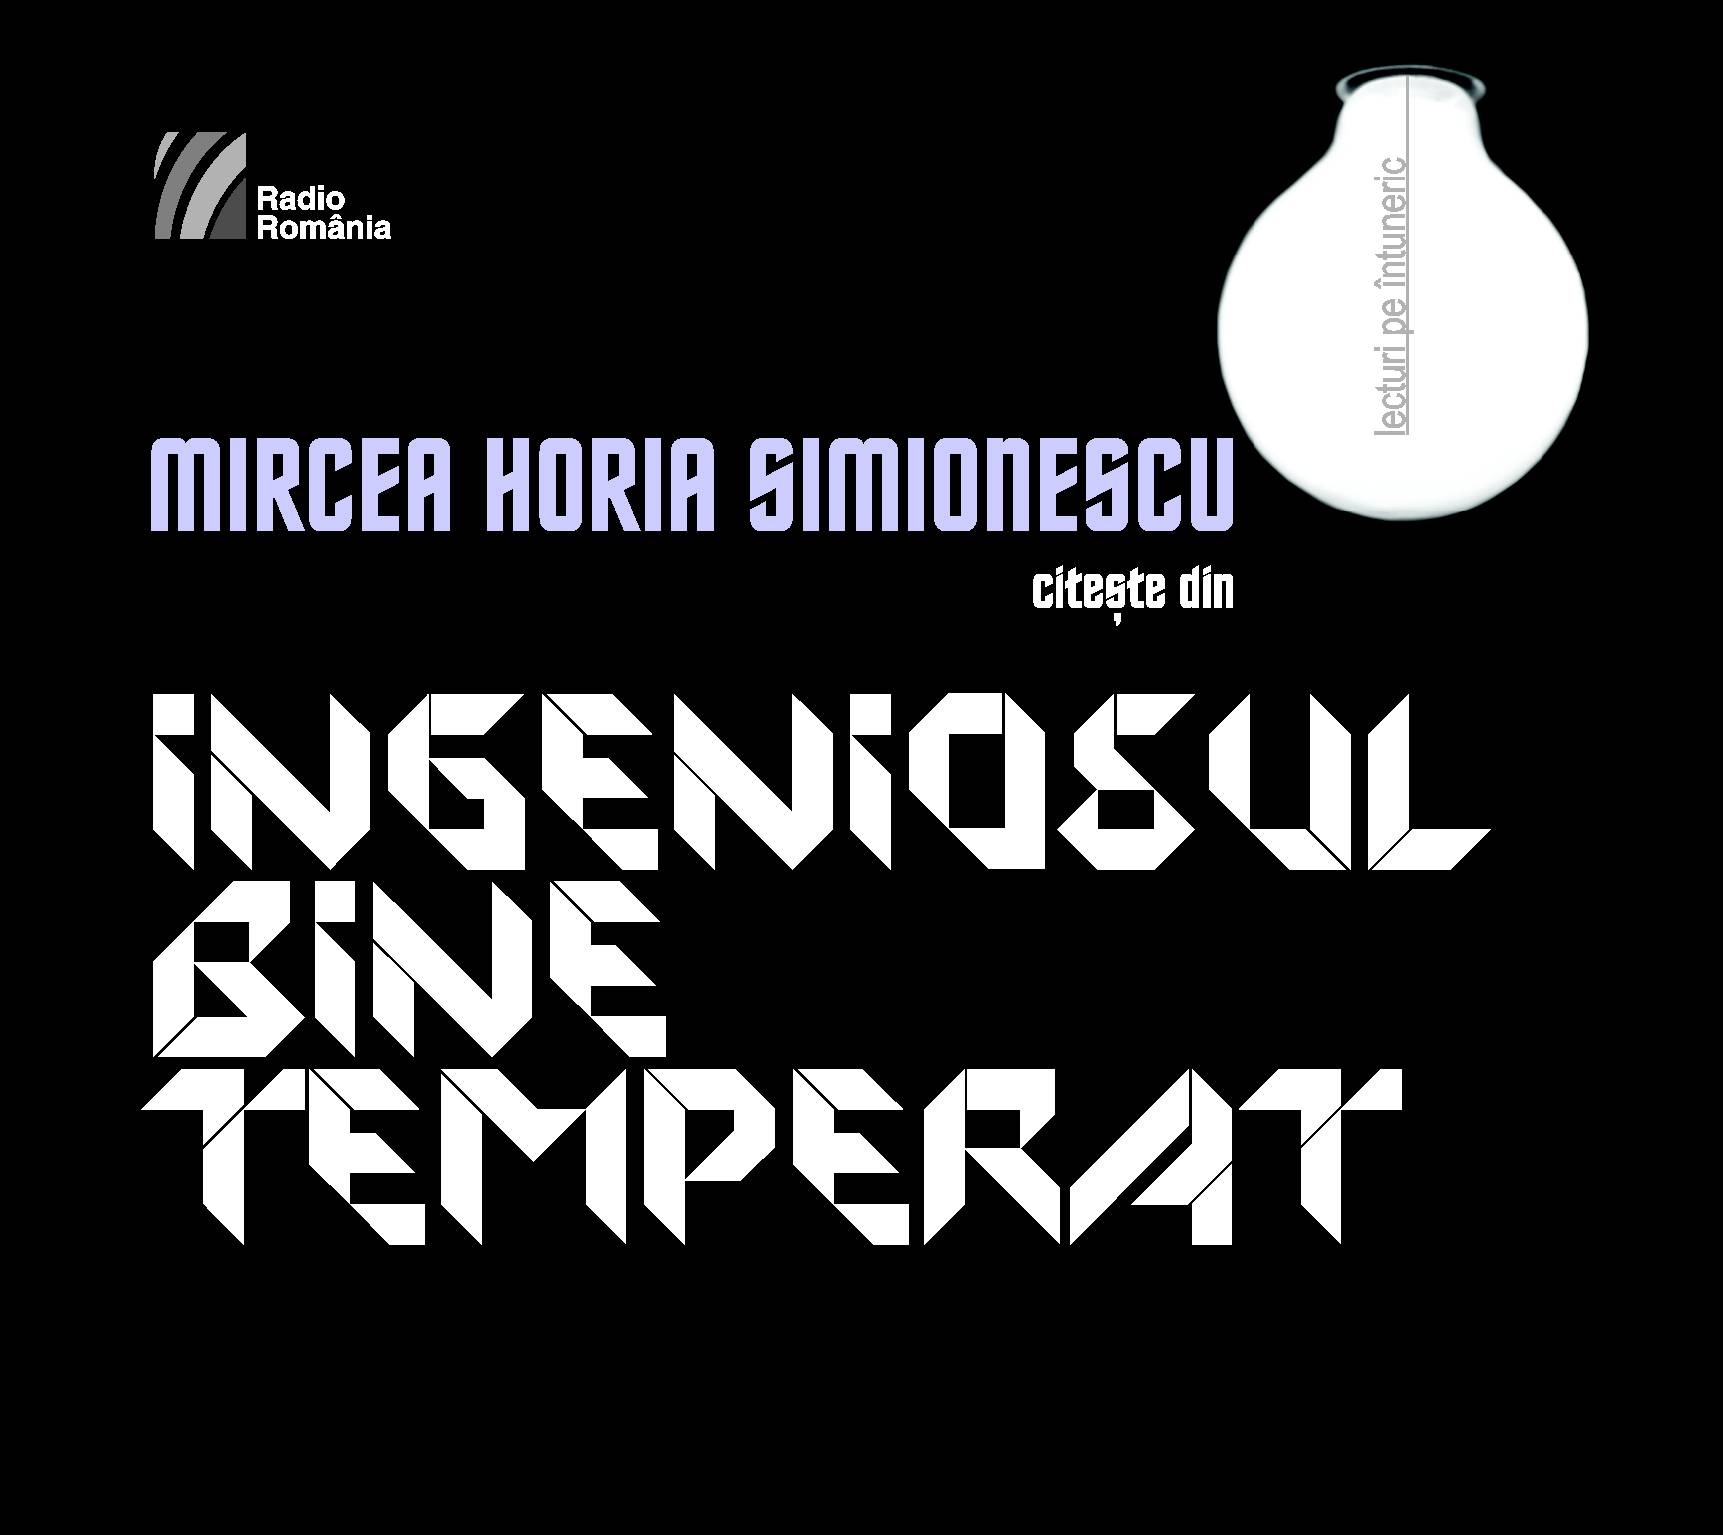 2CD Mircea Horia Simionescu Citeste Din Ingeniosul Bine Temperat